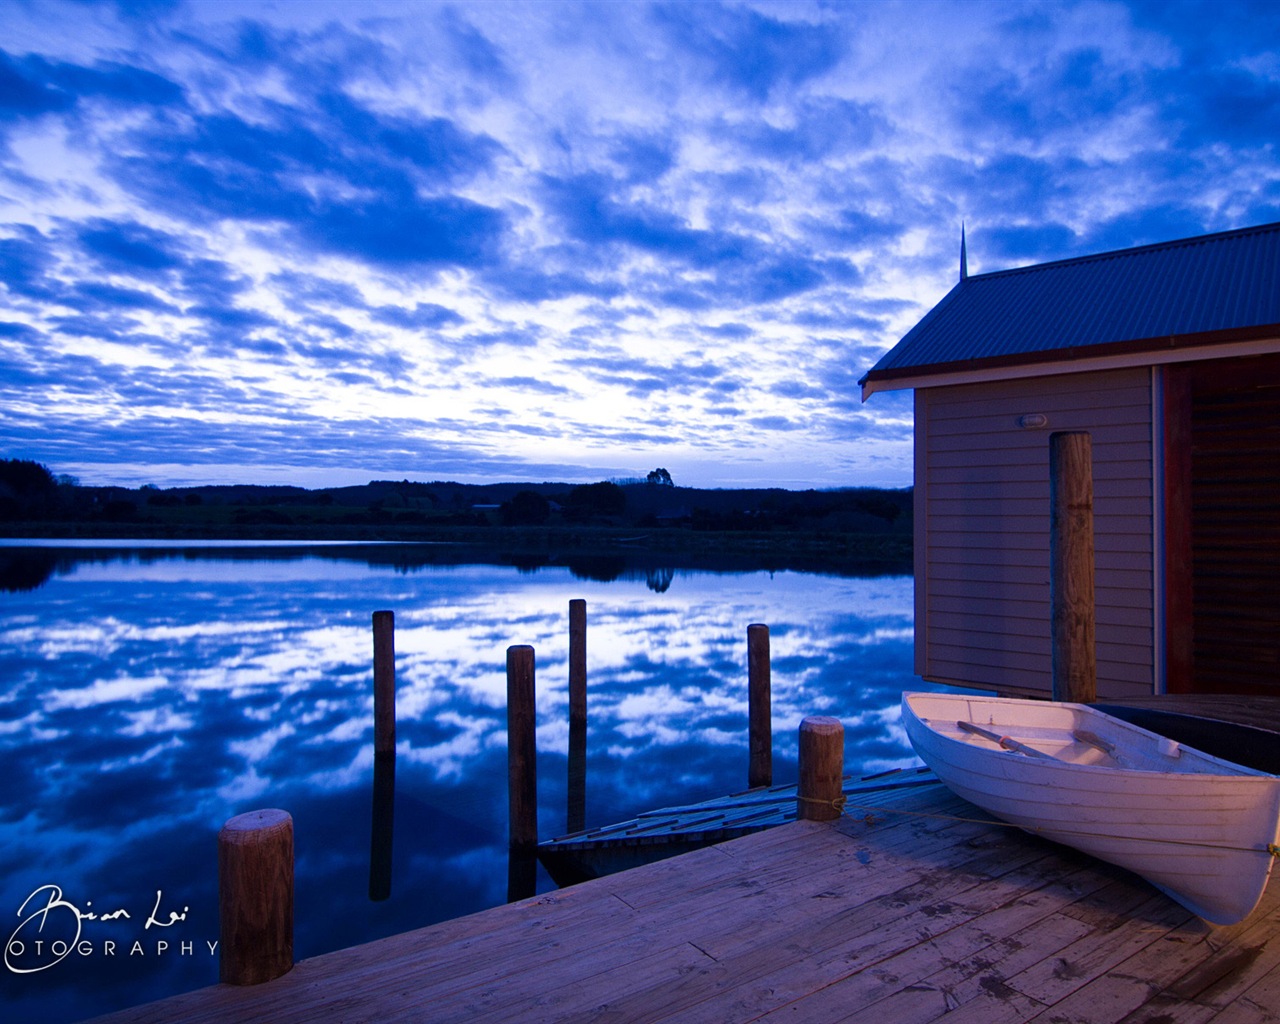 Nouvelle-Zélande Île du Nord de beaux paysages, Windows 8 fonds d'écran thématiques #1 - 1280x1024